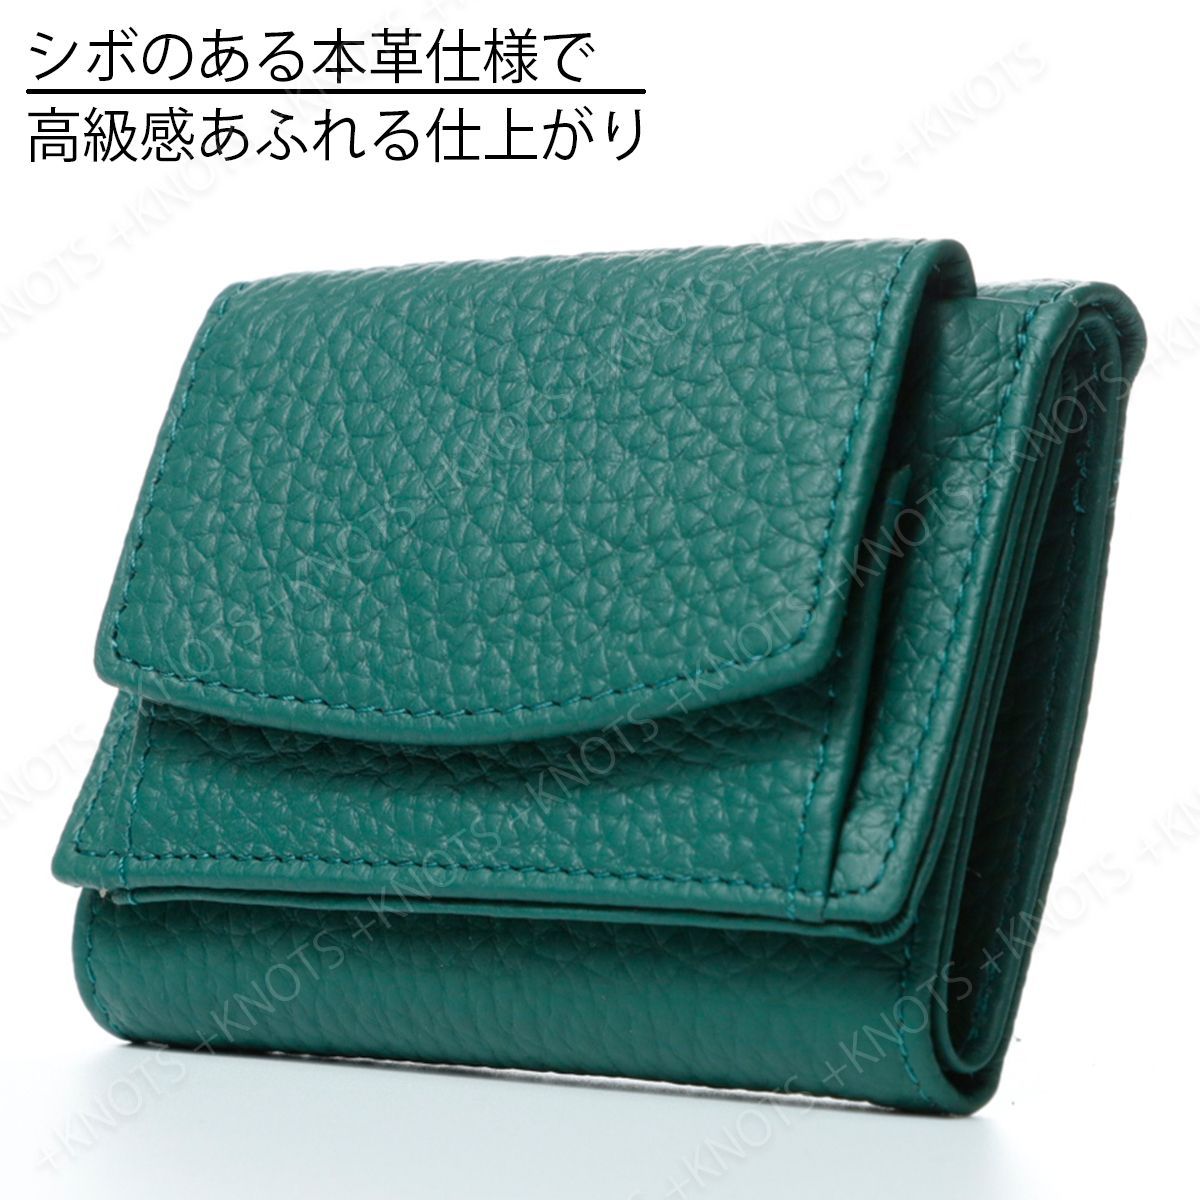 本革ミニ財布 グリーン緑 三つ折り財布 小さい財布 コンパクト財布